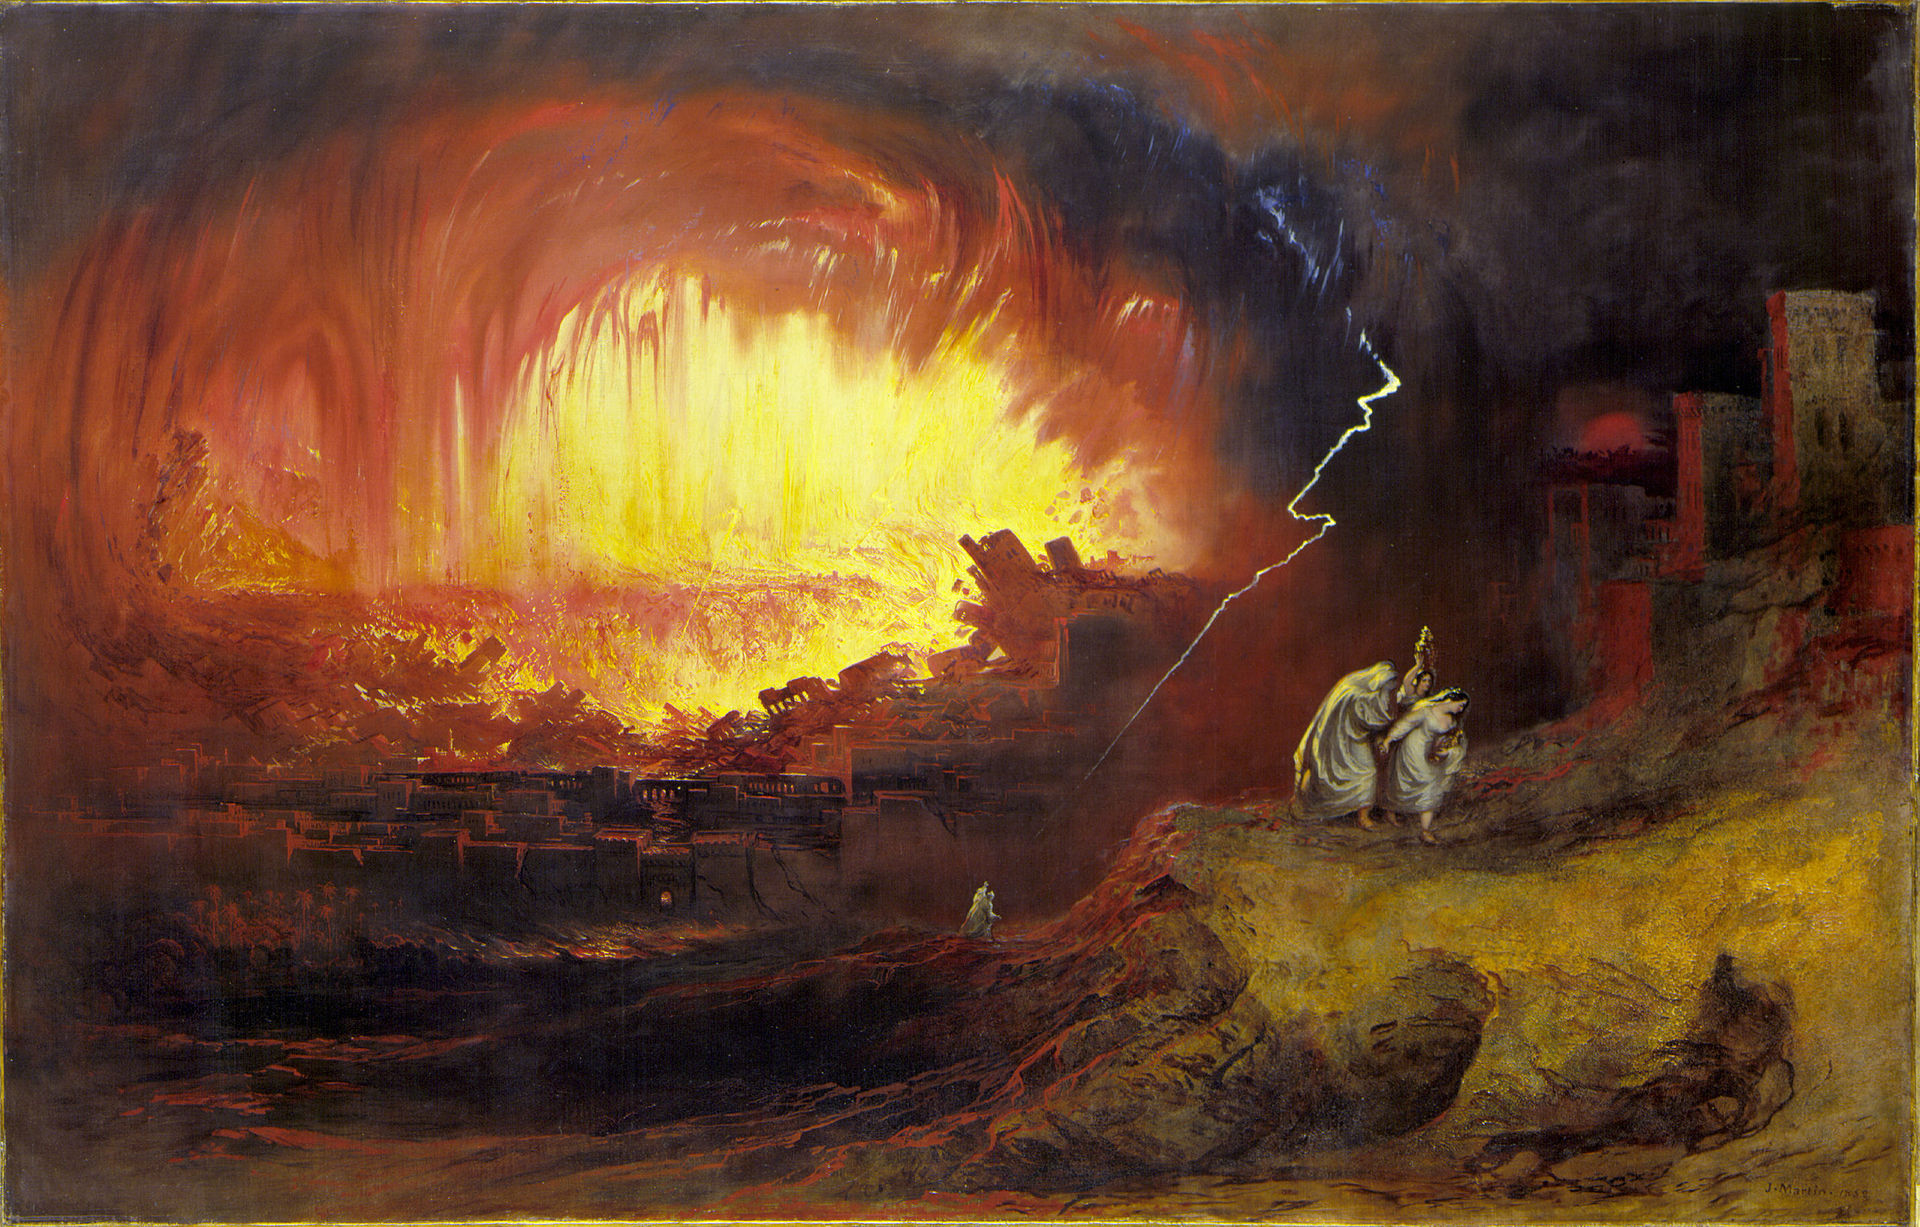 لوحة فنية حول  قصة سدوم وعمورة. John Martins (1789-1854): "The Destruction Of Sodom And Gomorrah"; Quelle: Wikimedia Commons 